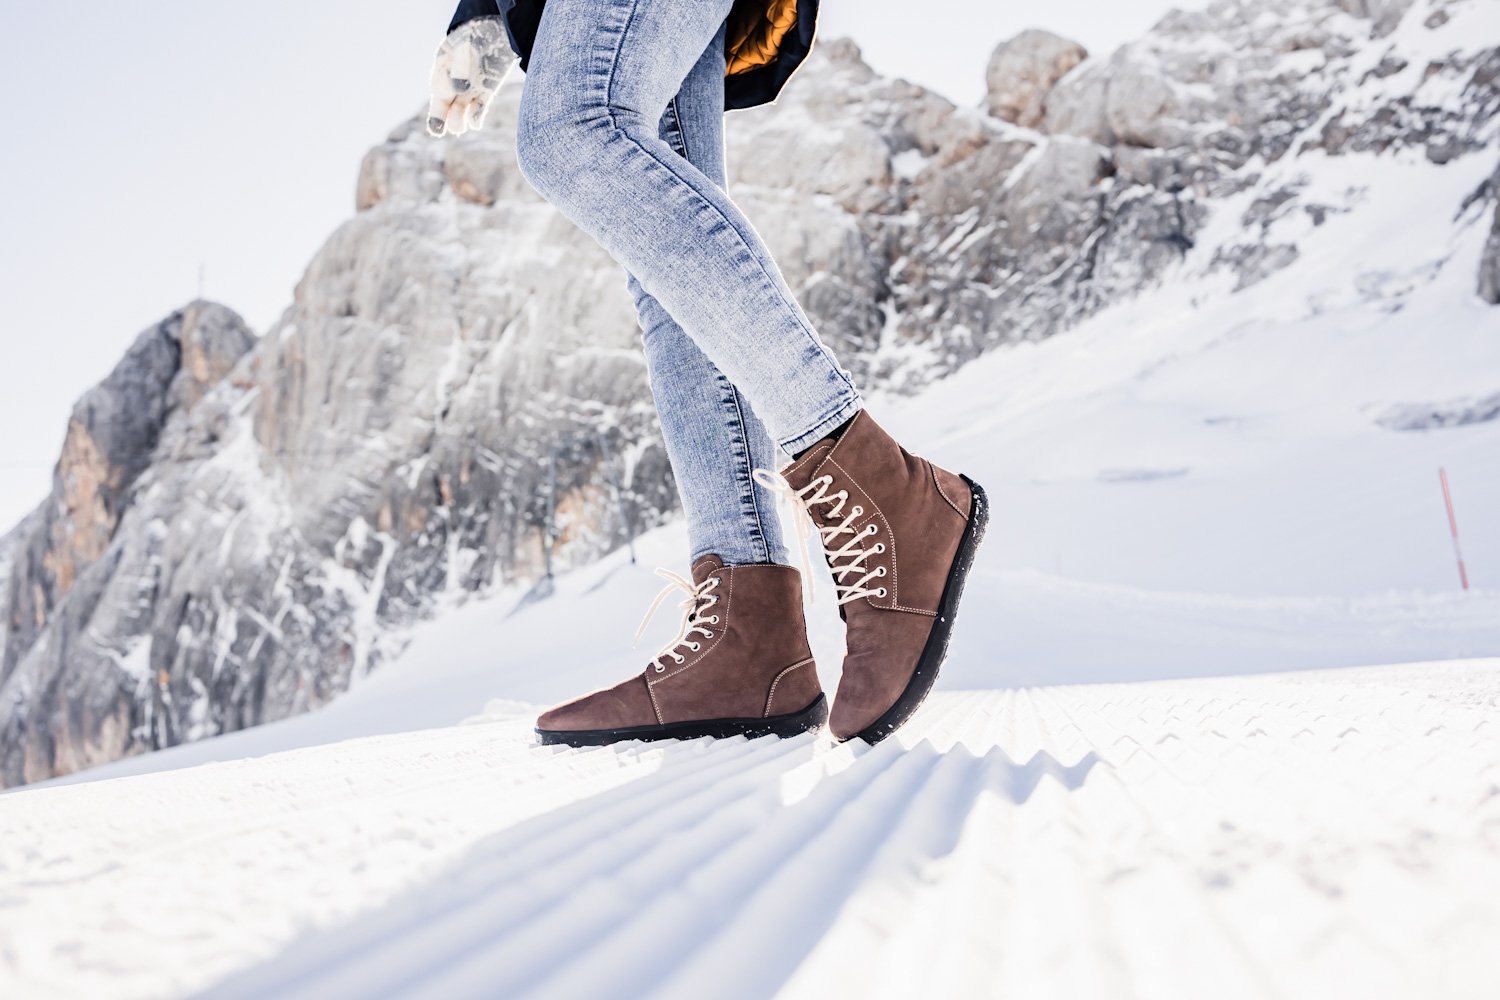  TODO Warm Wool Women's Leg Warmers - Soft, Flexible keep Heat  in Winter (Beige) : Everything Else